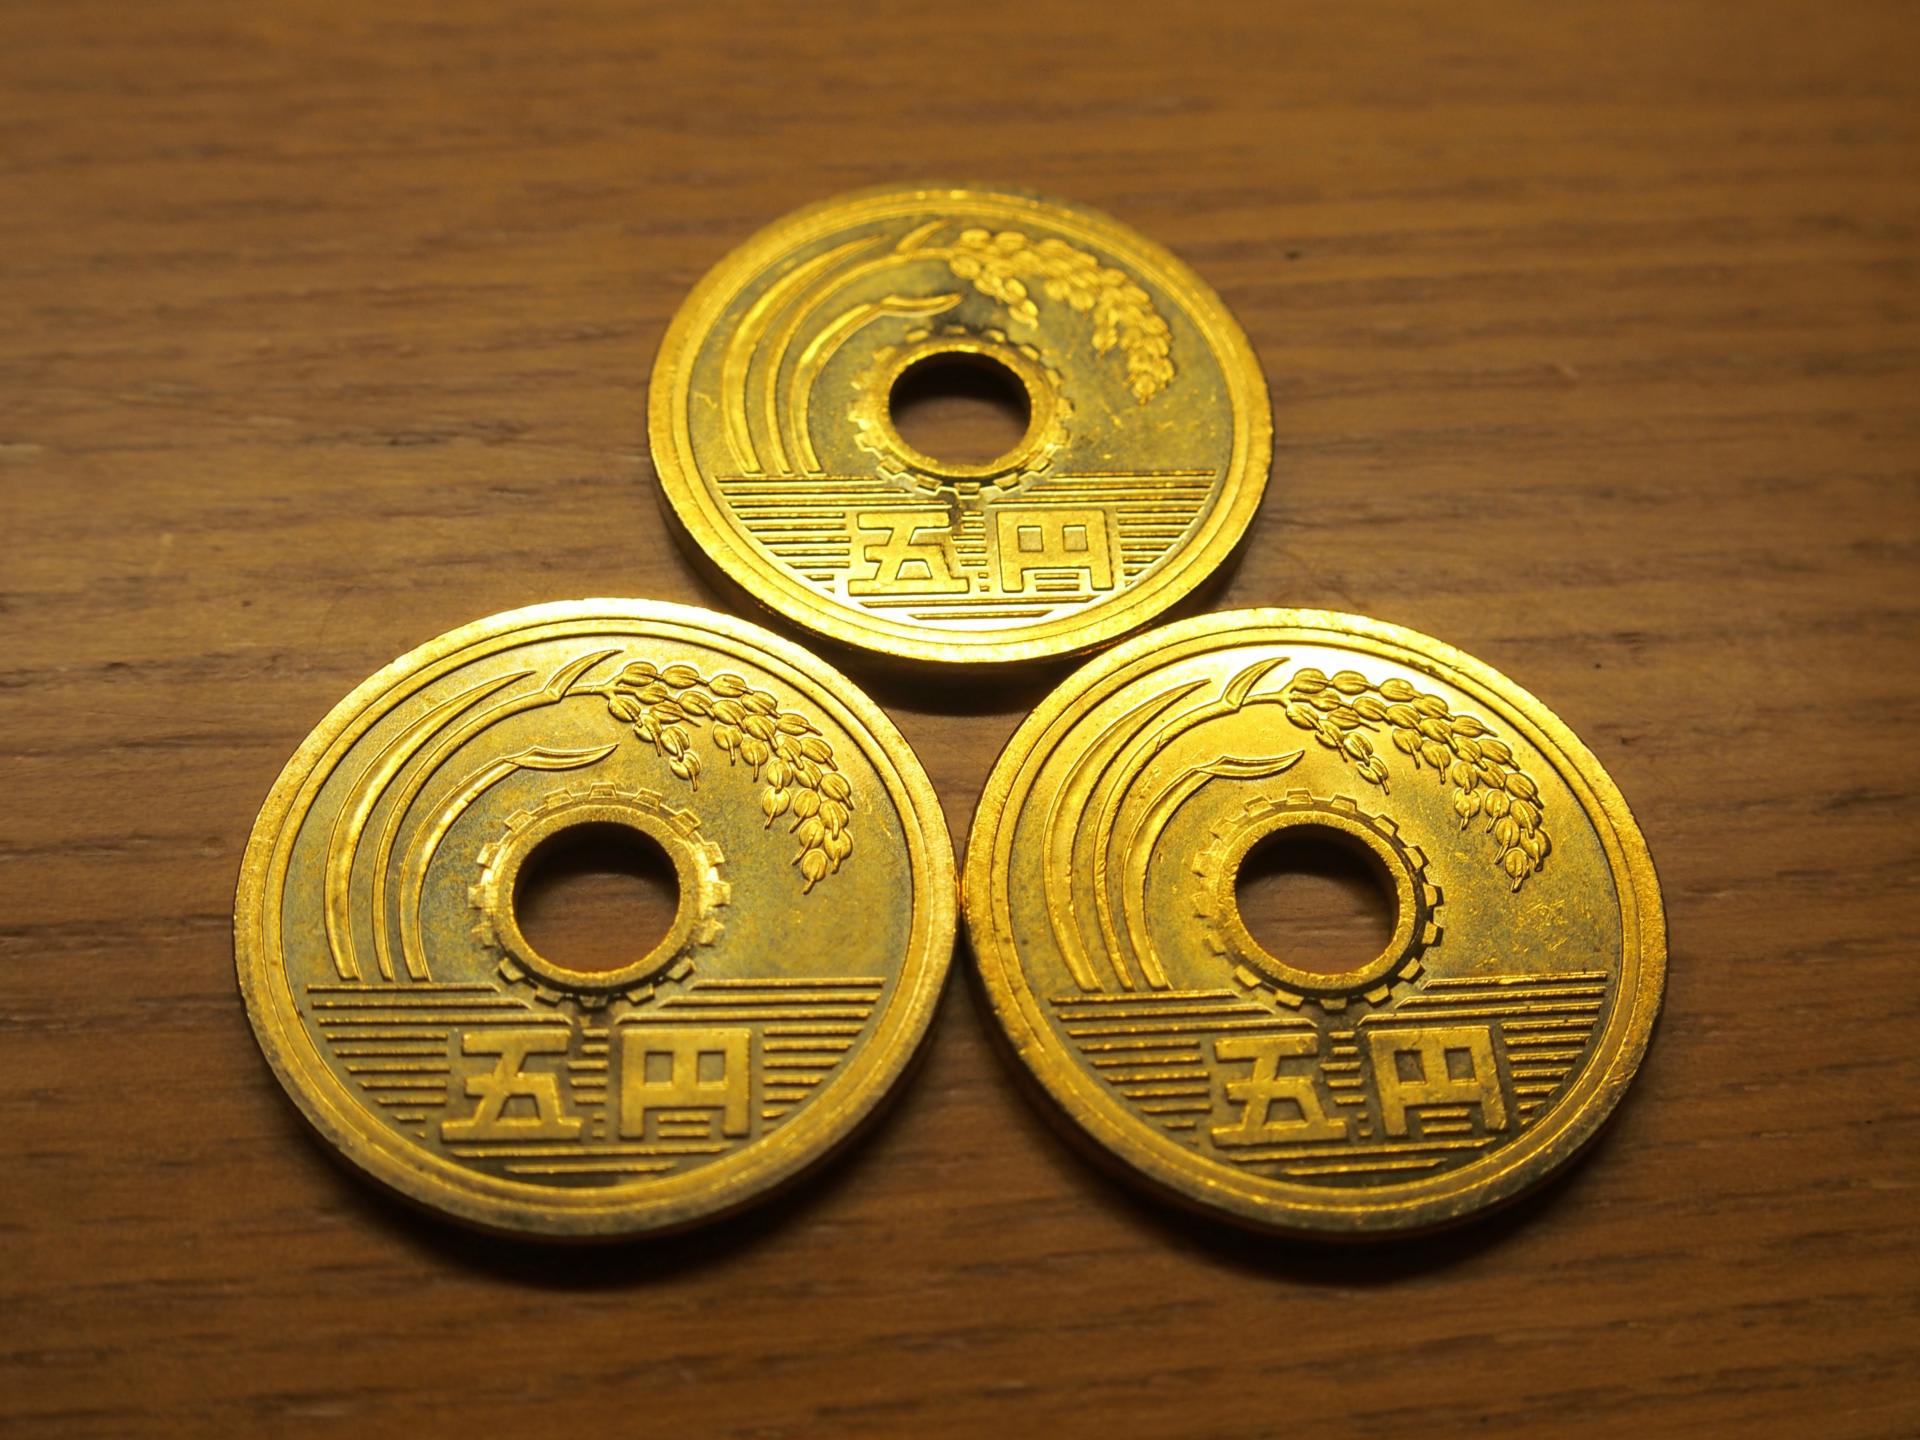 平成26年発行のピカピカ五円玉が3枚もお財布に・・・ - 気まぐれデジタル日誌